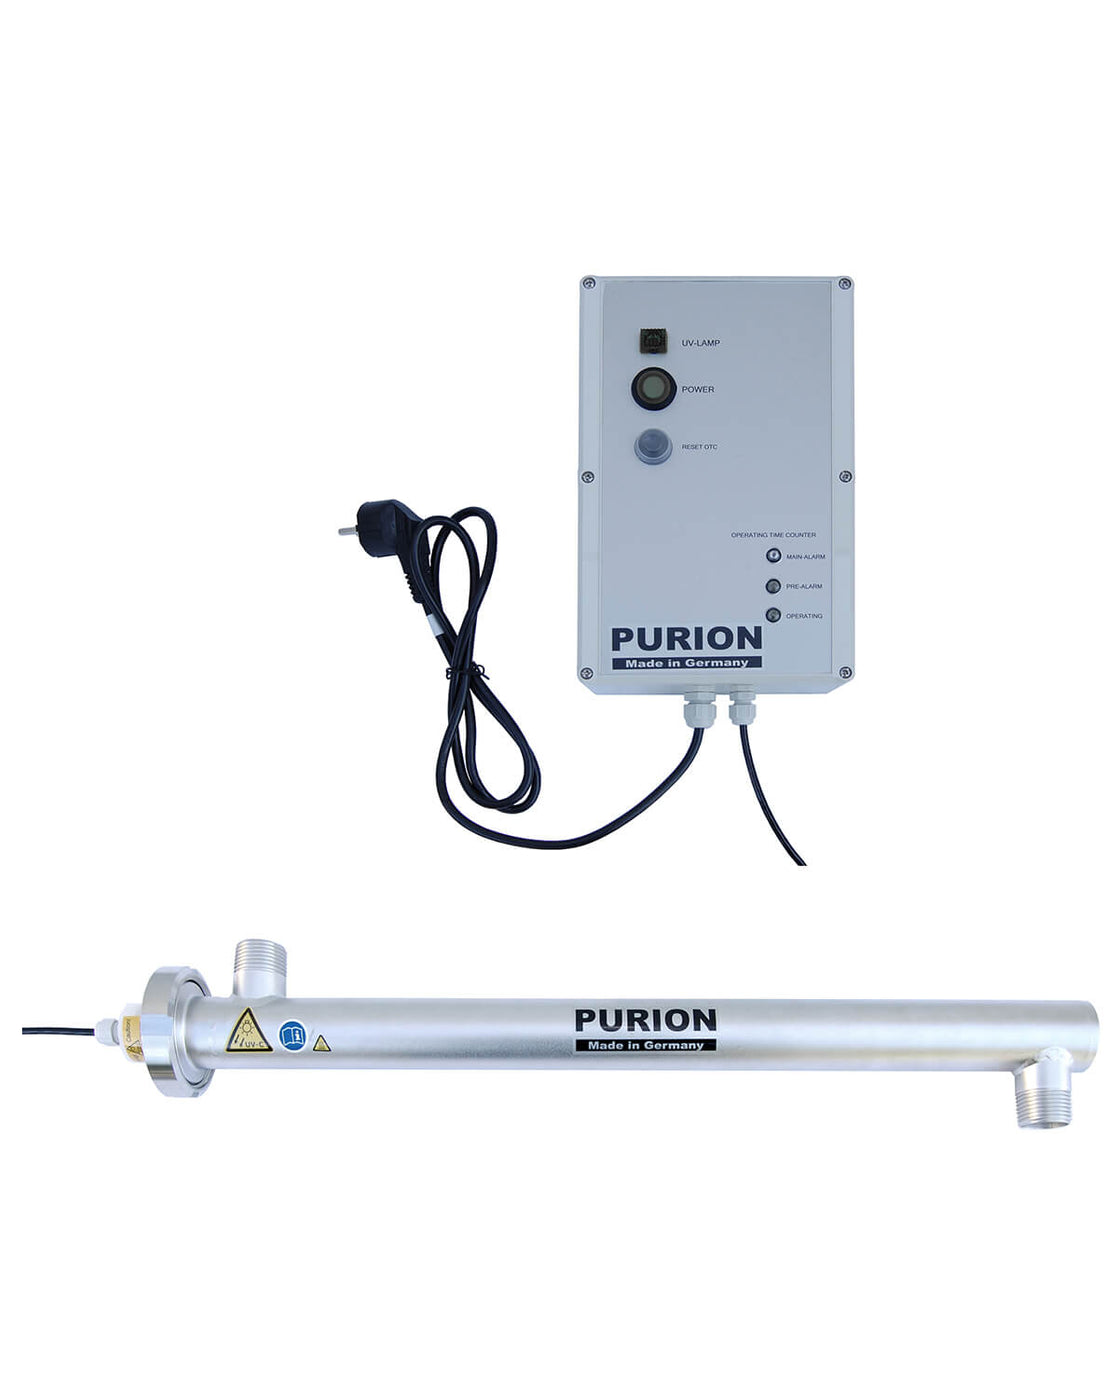 Der PURION 2000 OTC, hergestellt von der PURION GmbH, ist ein hochmoderner UV-Strahler für die effektive und effiziente Entkeimung von Trinkwasser.